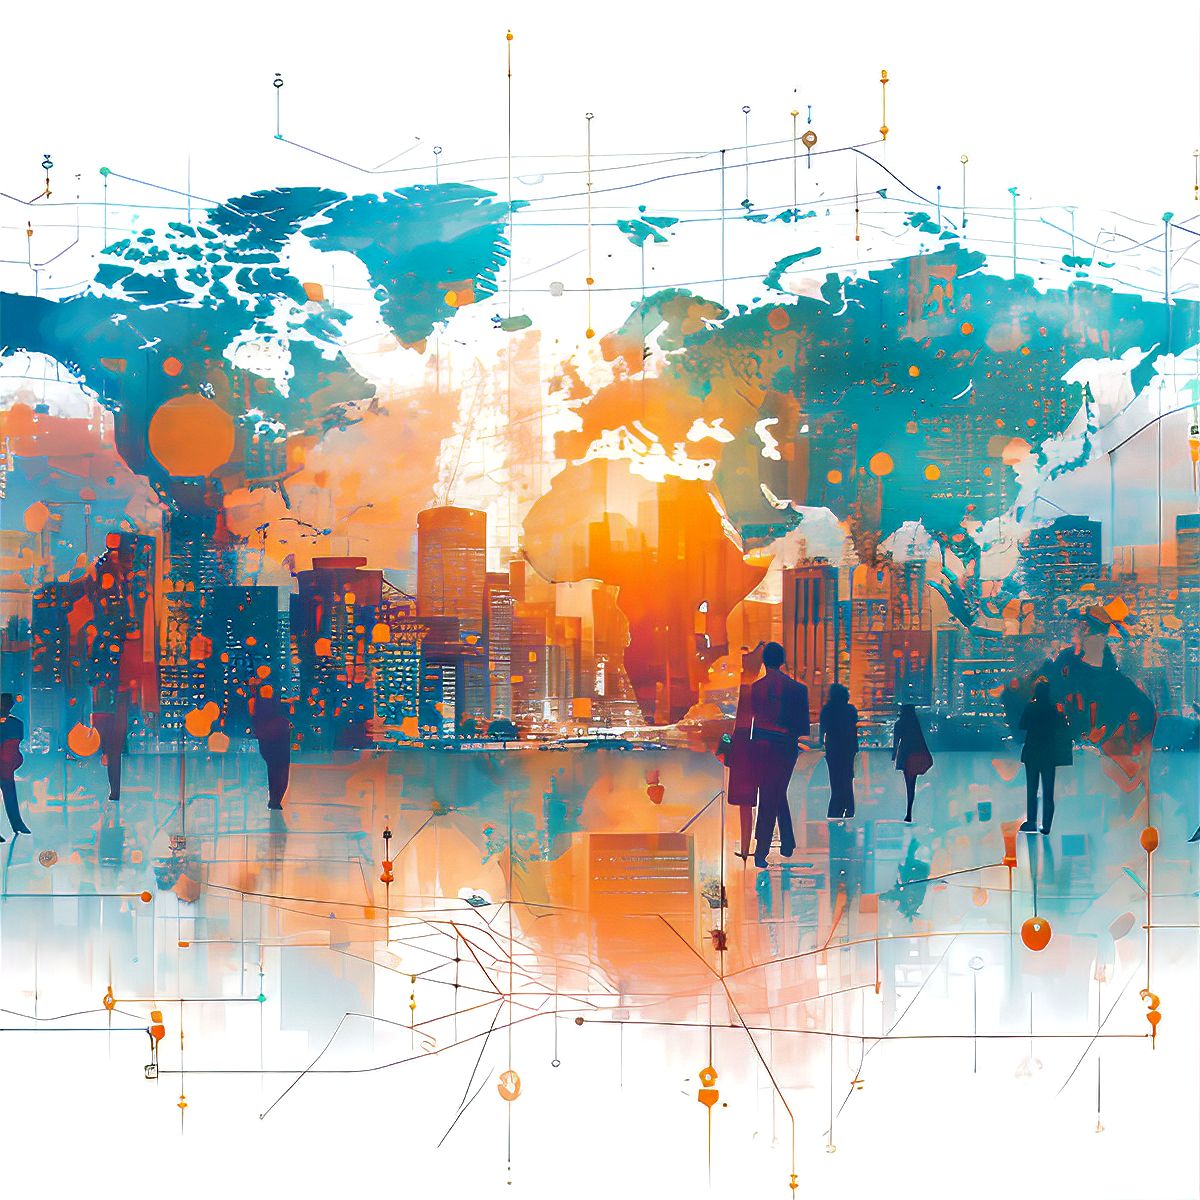 Stilisiert dargestelltes, zweifarbiges Sujet, bei dem Geschäftsleute vor einer großen Weltkarte spazieren